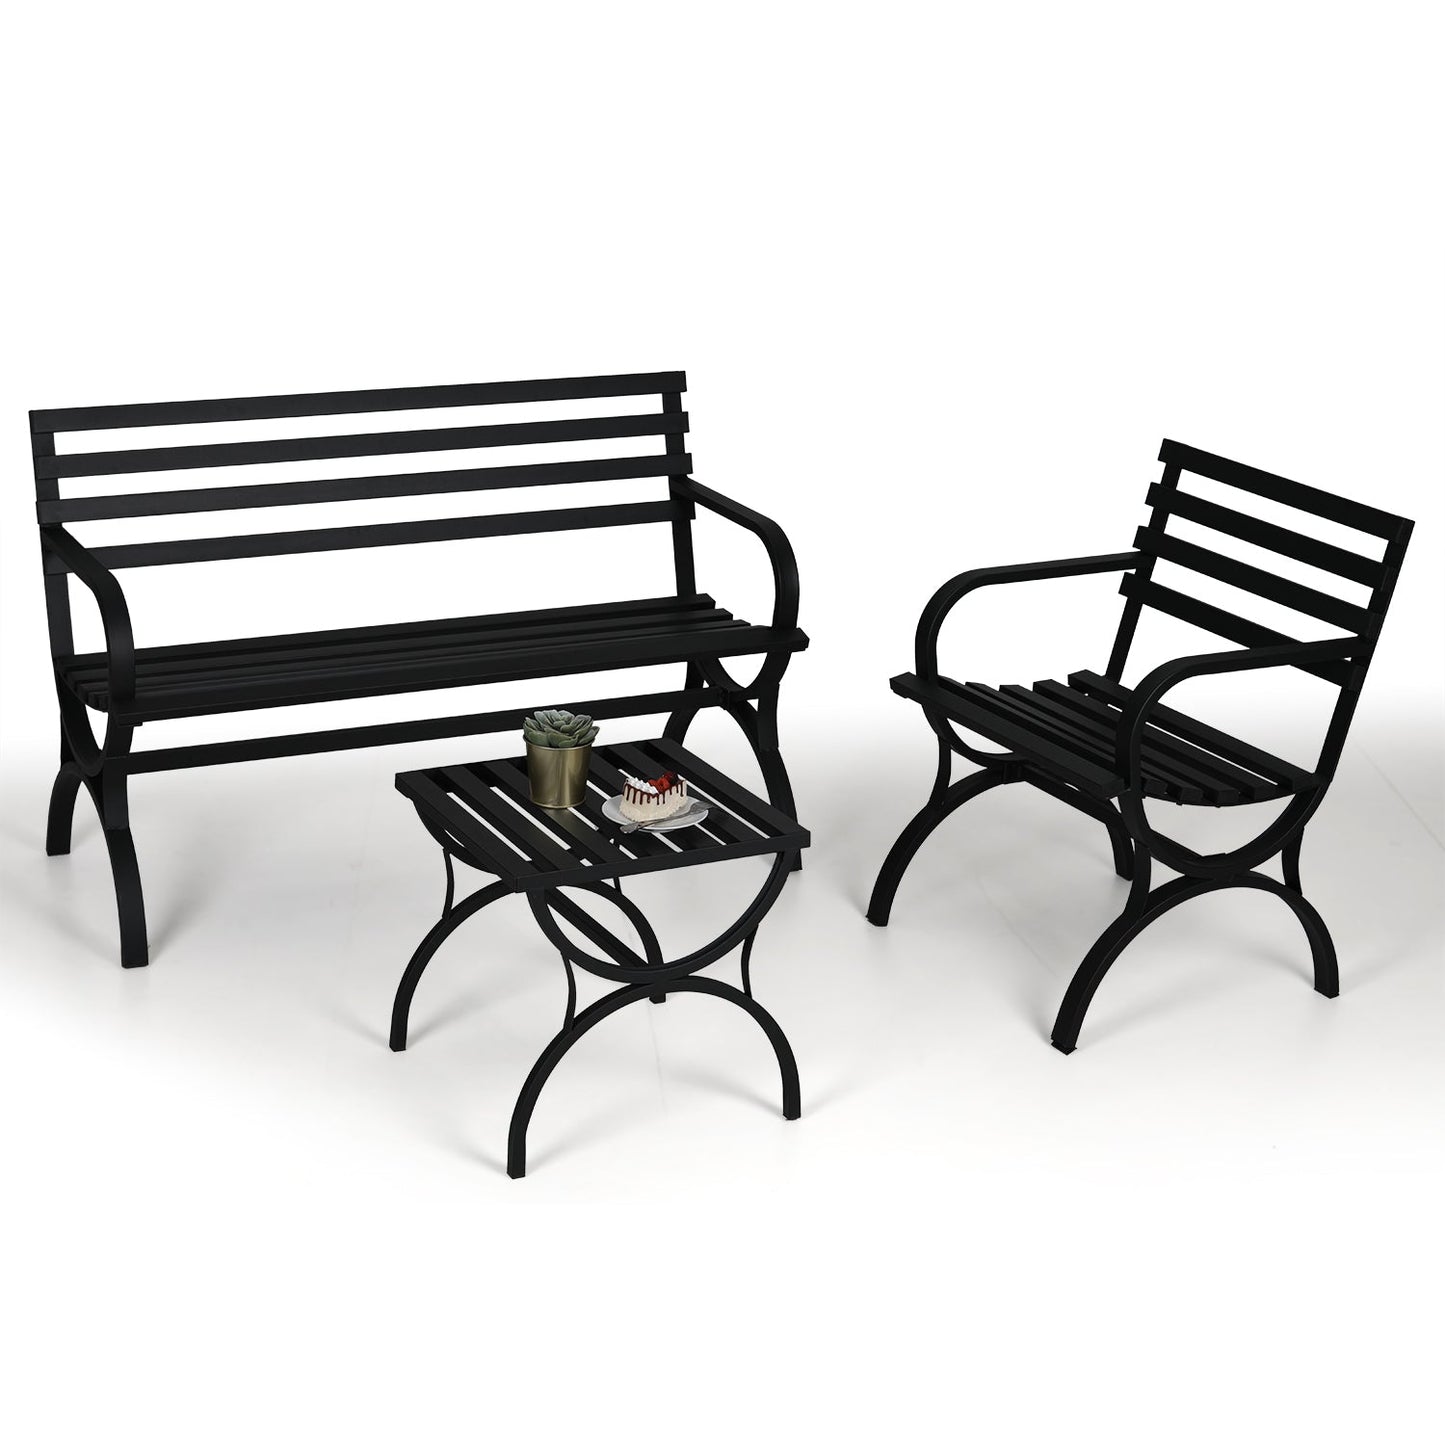 Sophia & William 3 Pieces Outdoor Metal Bench Table Set Patio Conversation Set - Black